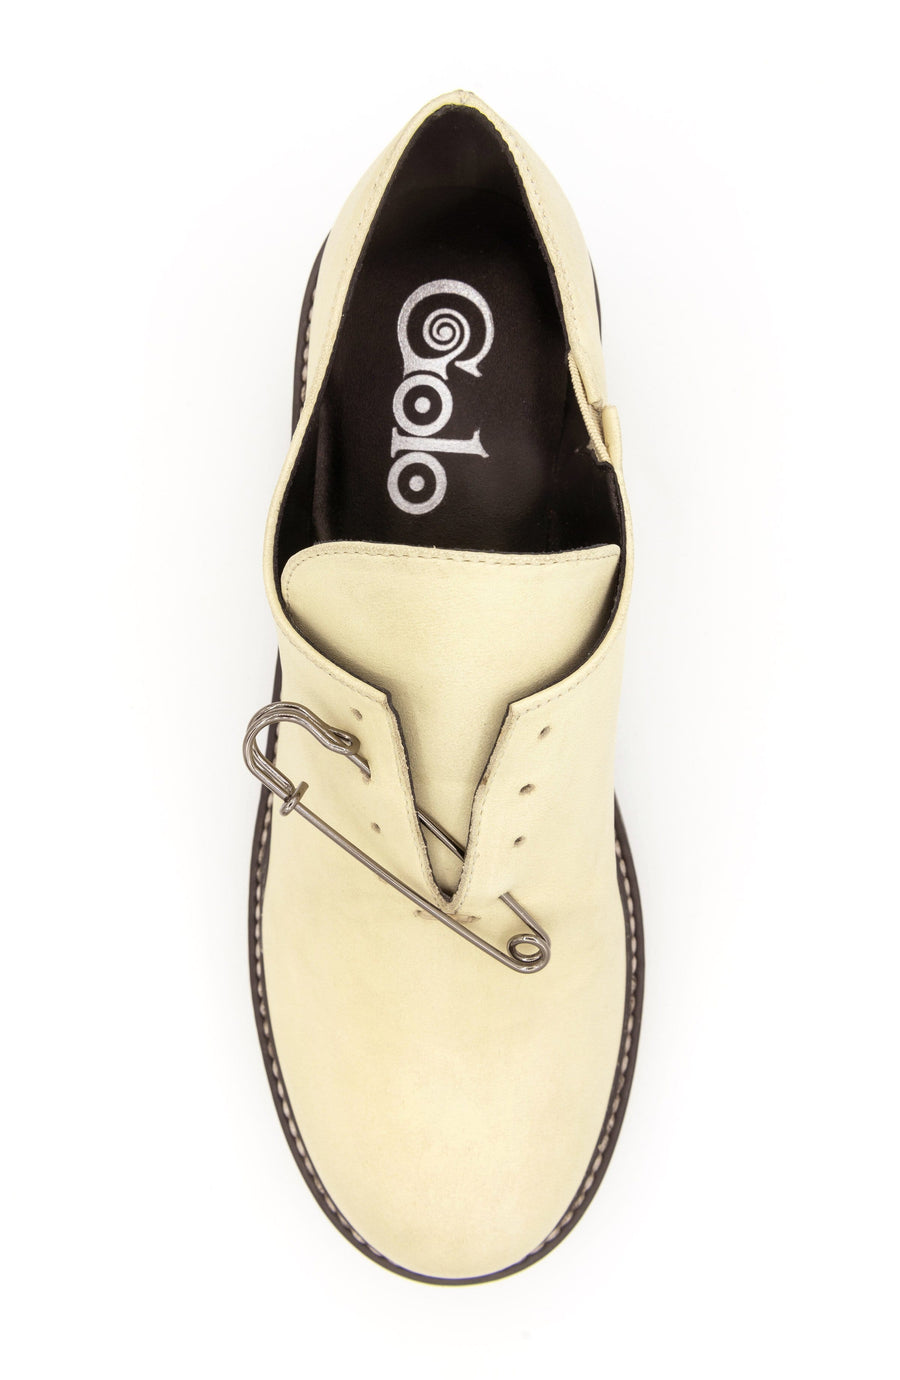 goloshoes Clash golo shoes sandals boots cool fashion co